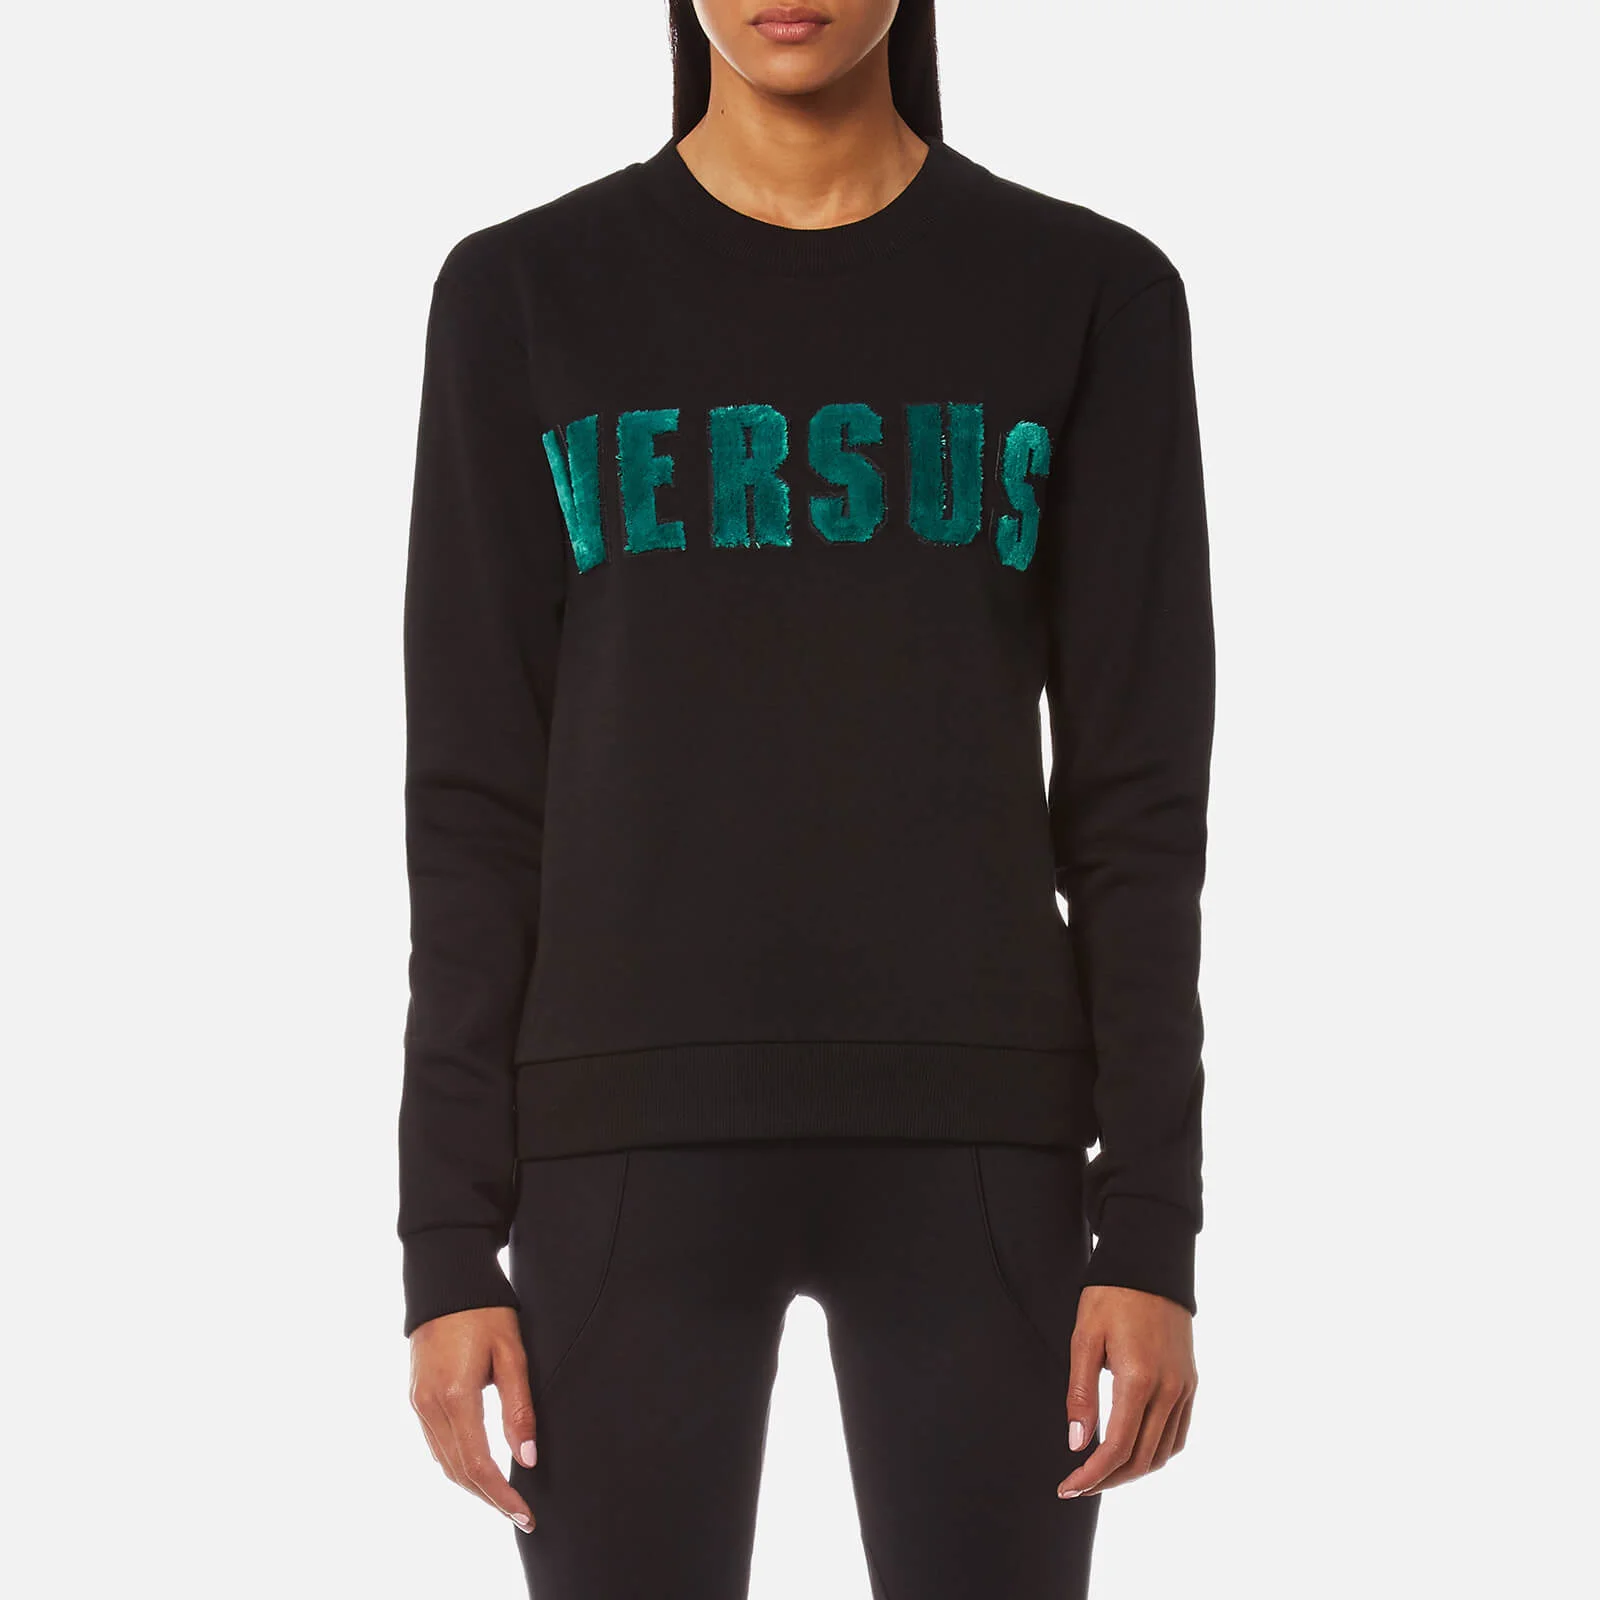 Versus Versace Women's Versus Textured Logo Sweatshirt - Black Image 1